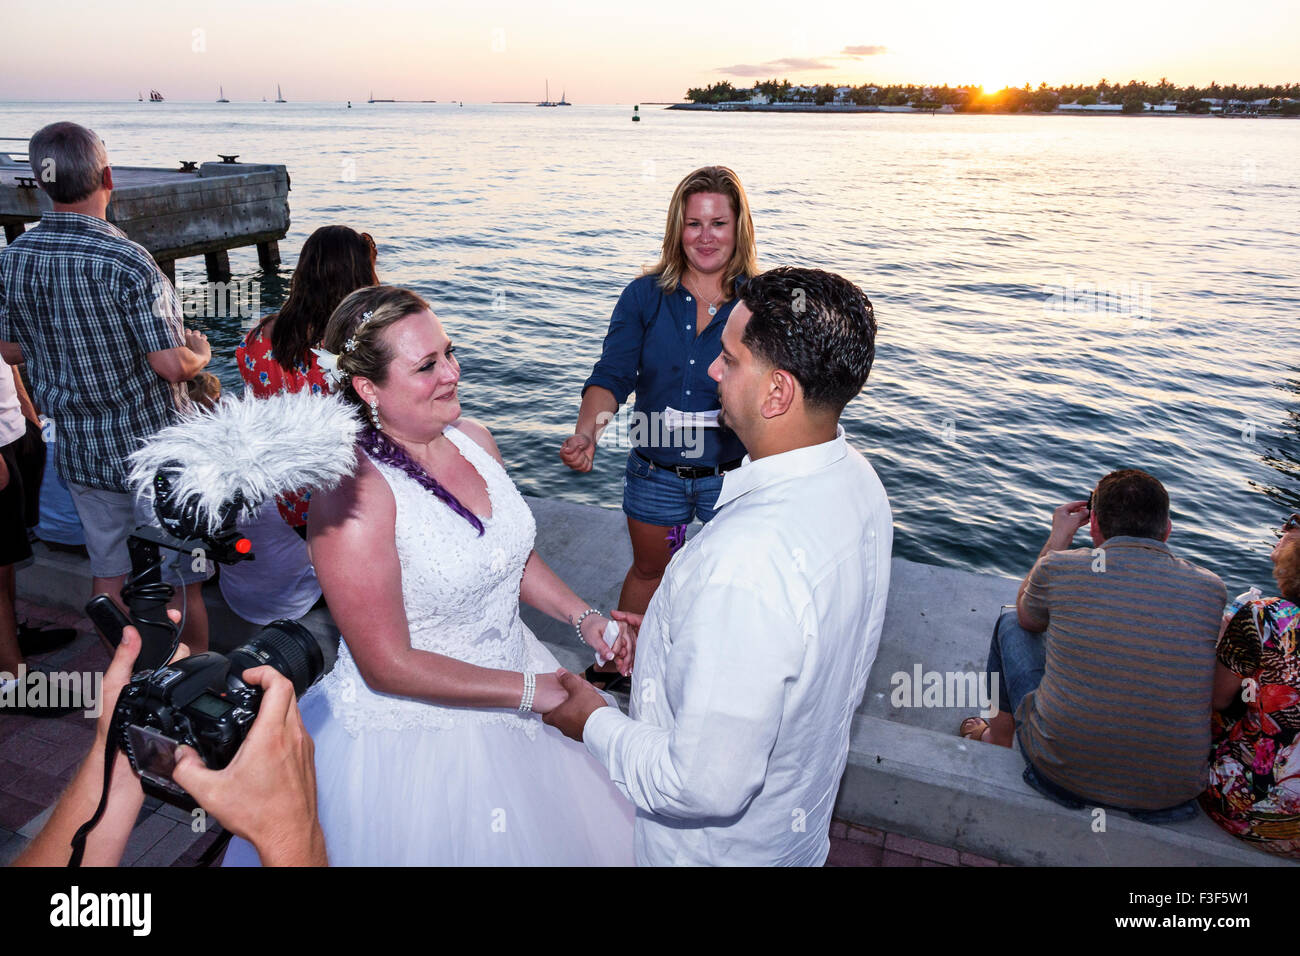 Key West Florida, Keys Mallory Square Dock, Sonnenuntergangsfeier, Festival, Hochzeitszeremonie, Brautpaar, Fotograf, Golf von Mexiko, Besucher reisen auf Reisen Stockfoto